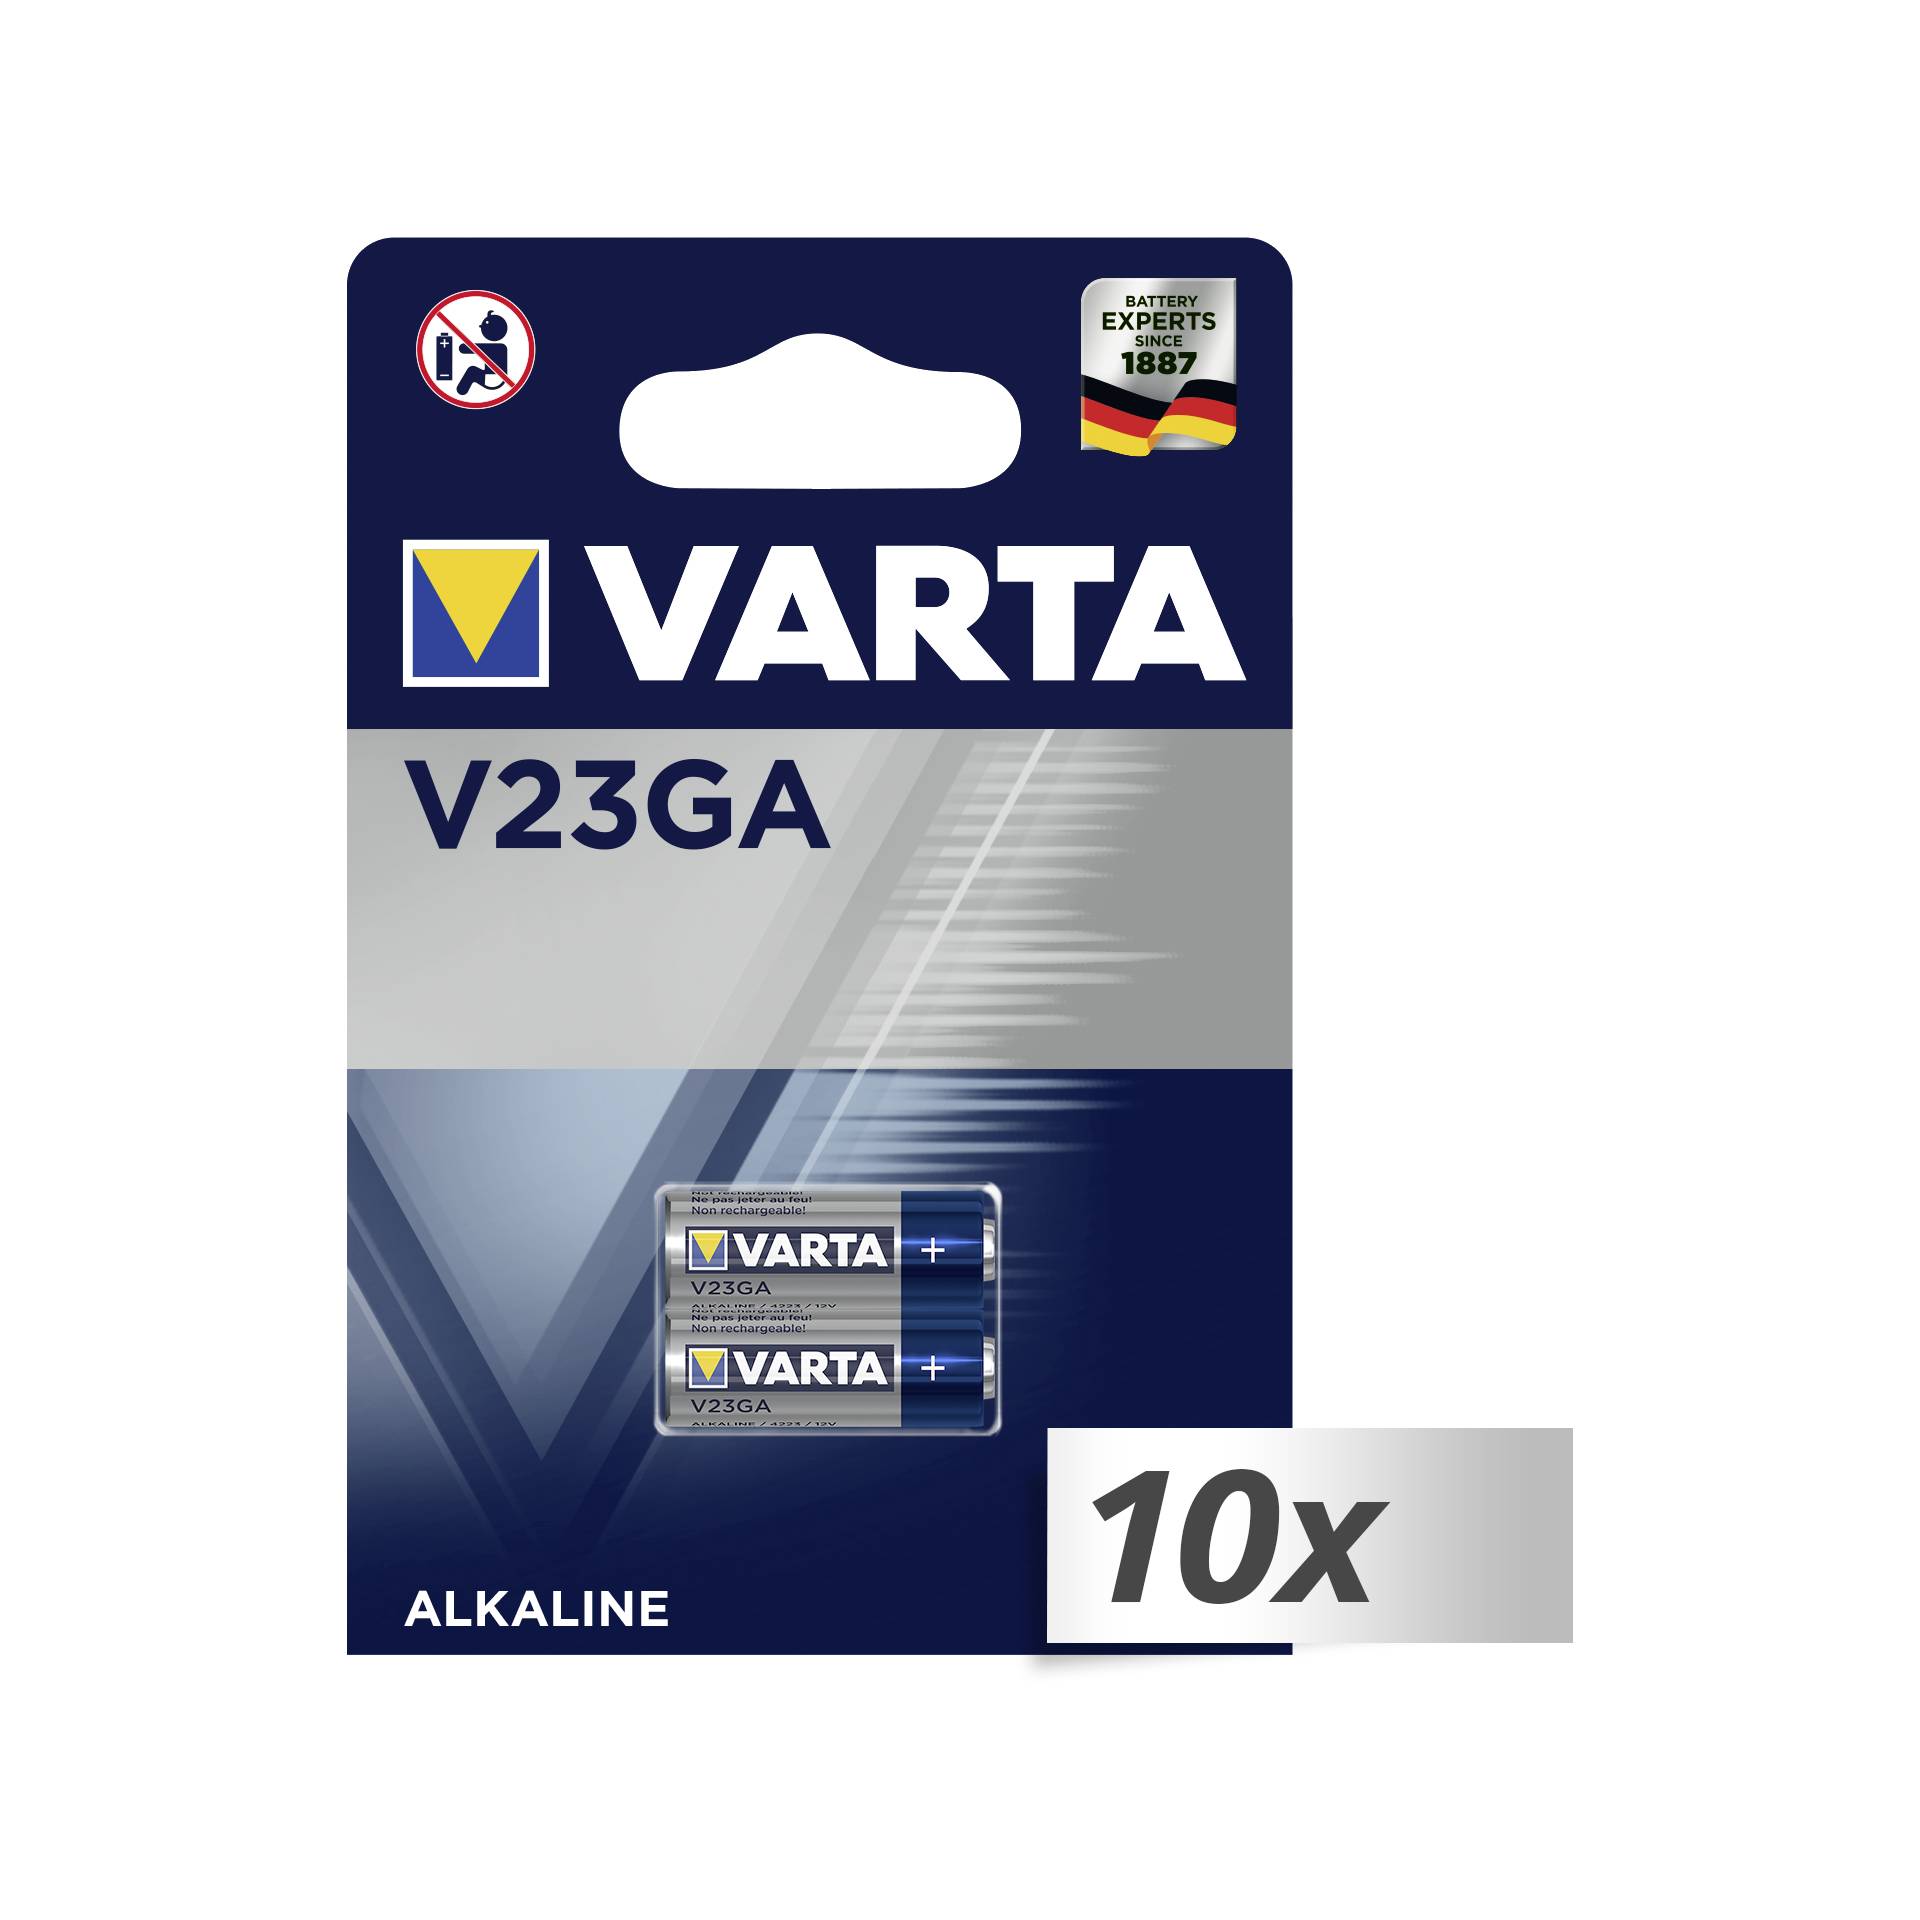 10x2 Varta electronic V 23 GA Car Alarm 12V